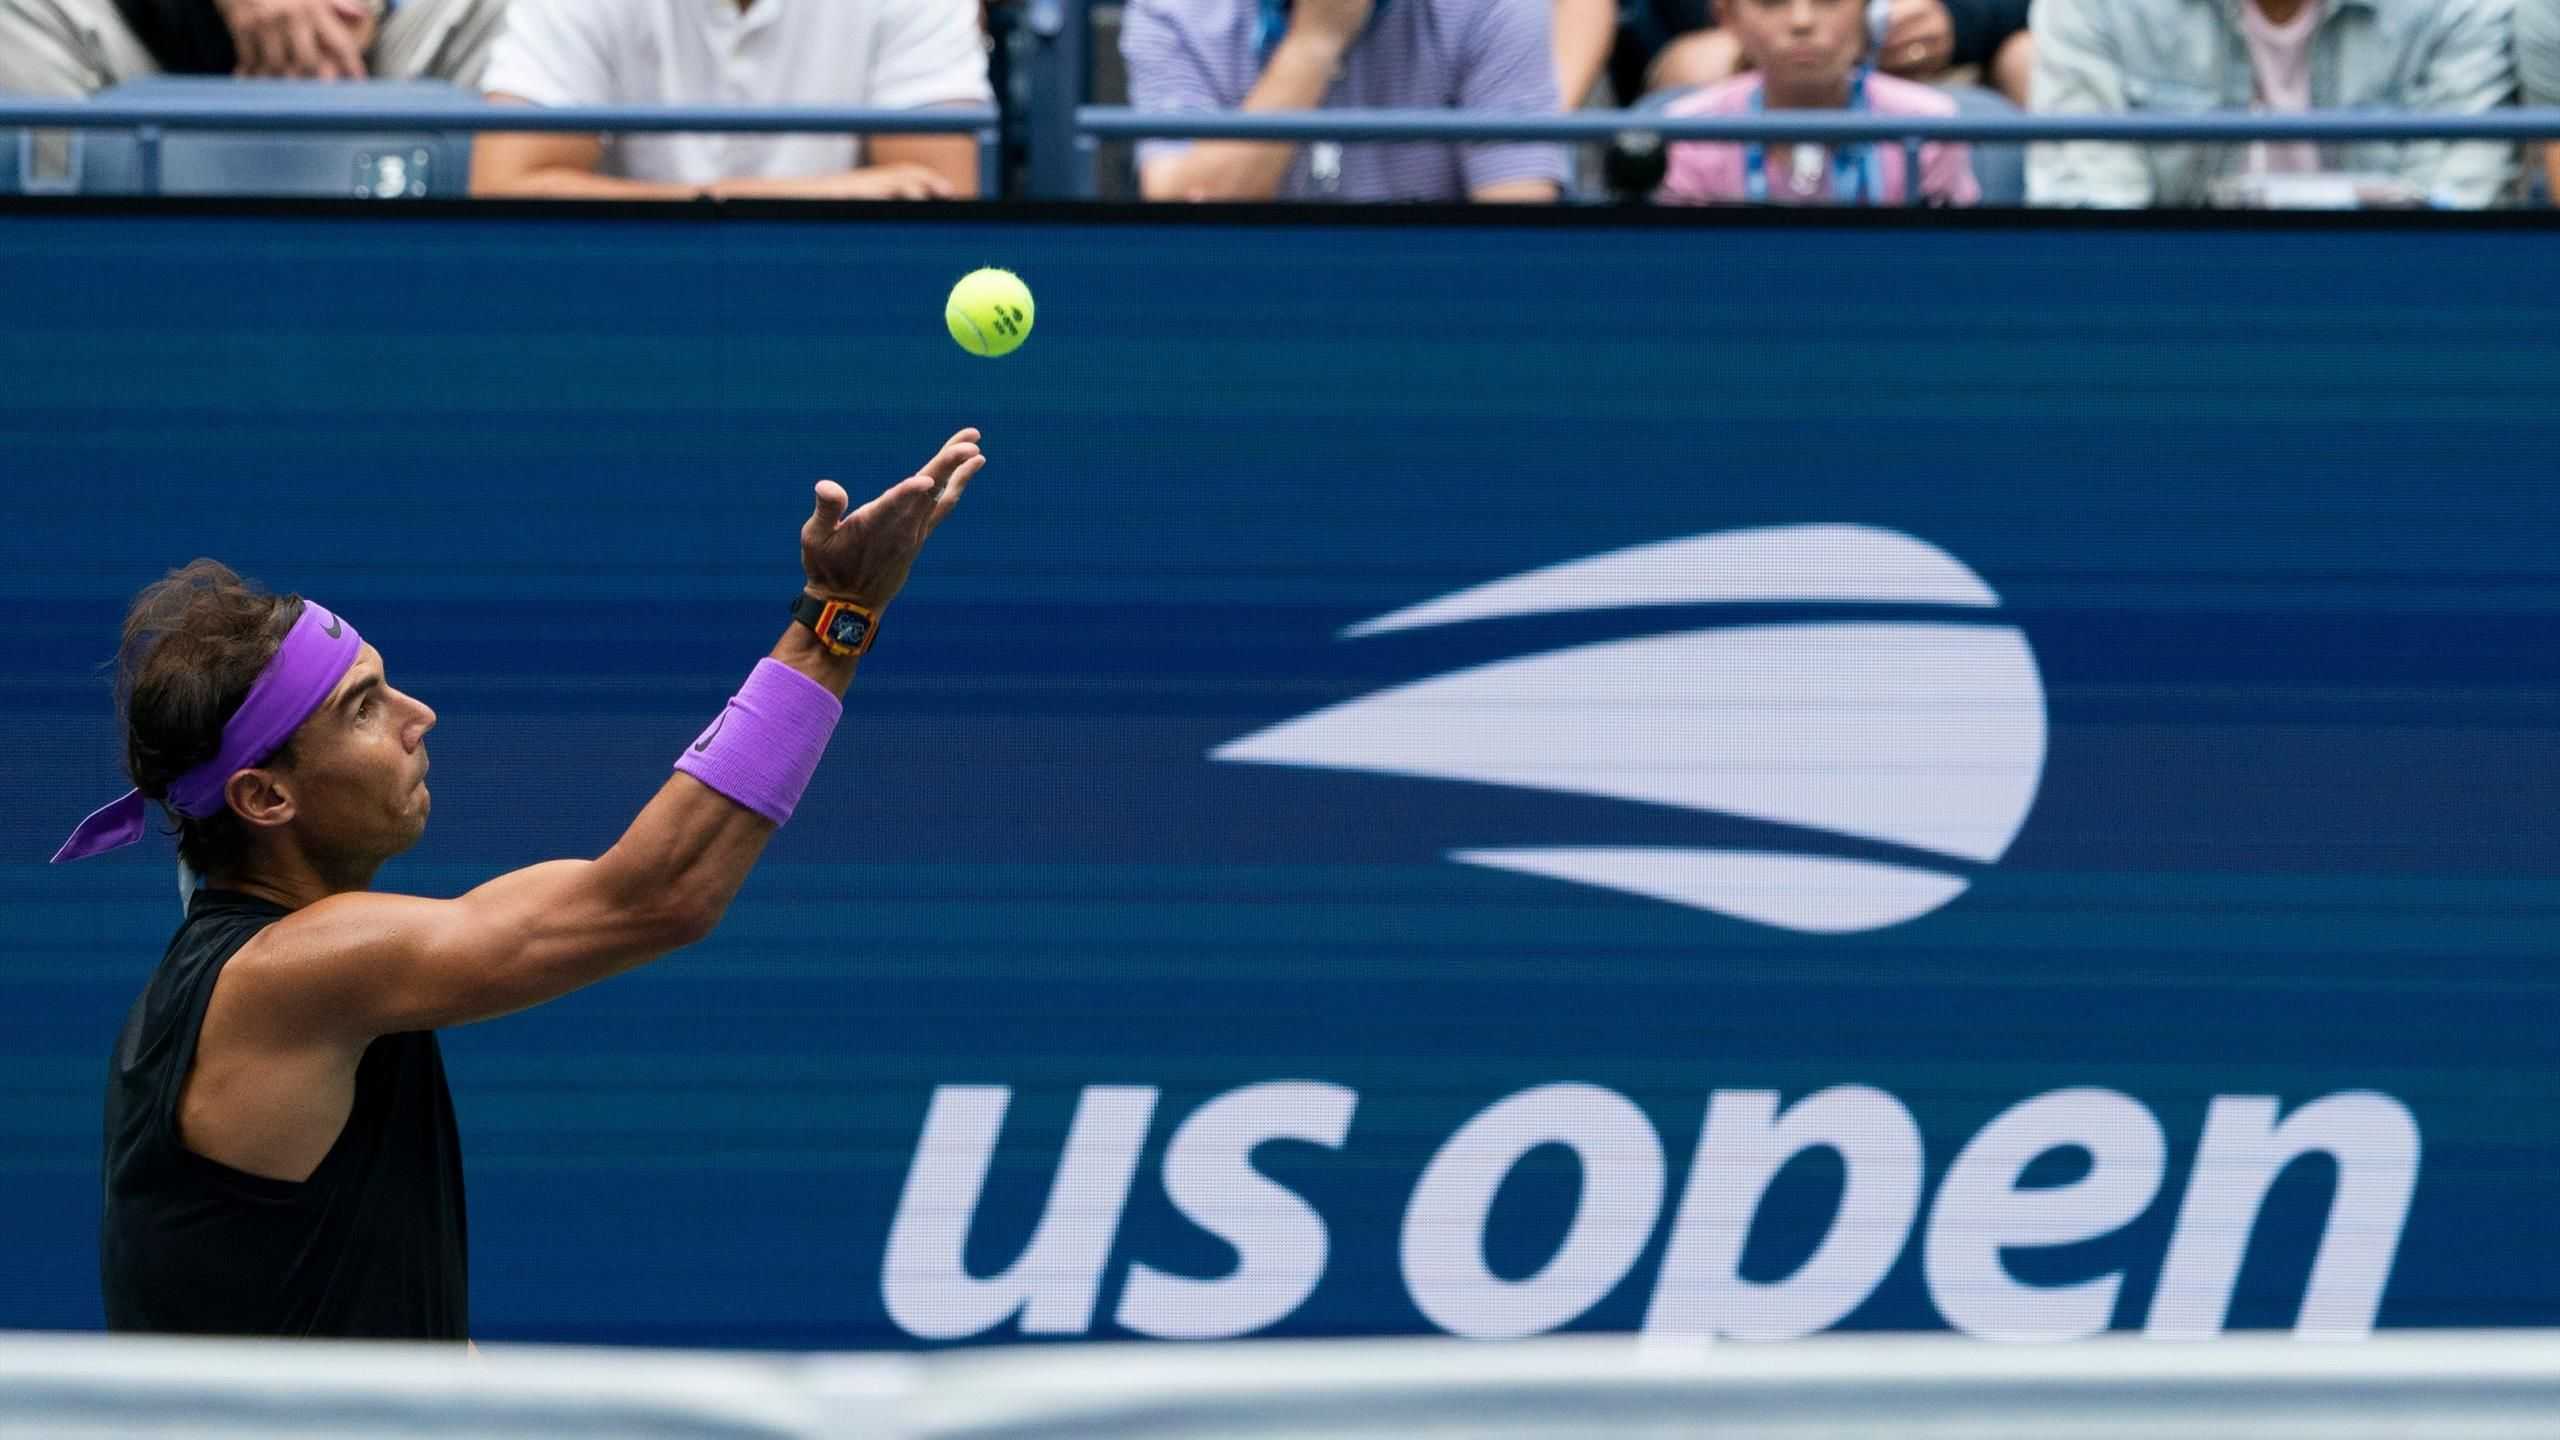 "Ne voyez pas cela se produire" - La légende du tennis ignore tout gagnant surprise à l'US Open 2020